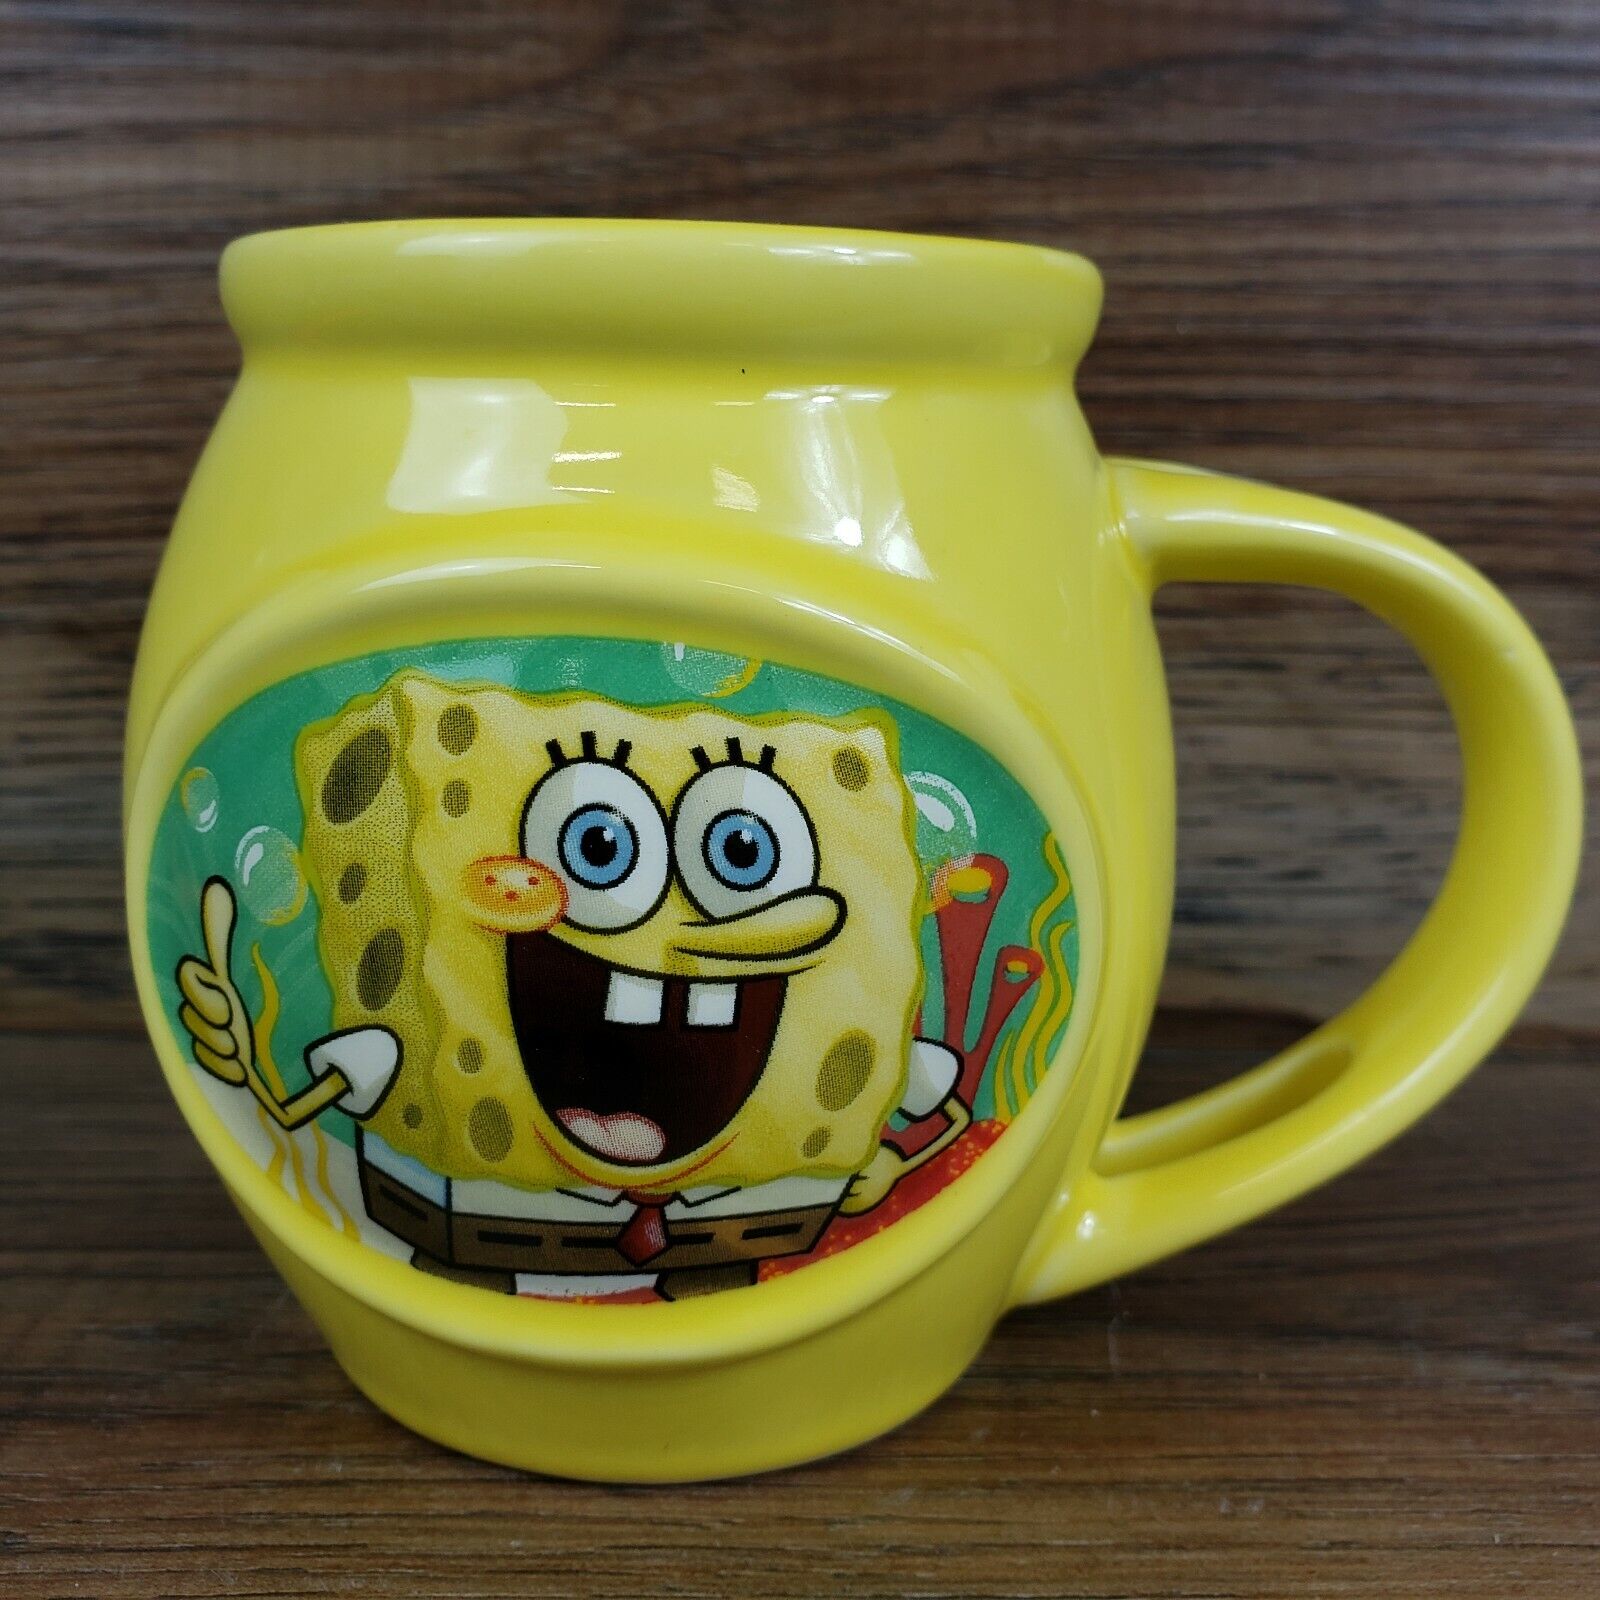 RARE Viacom 2013 Ceramic Spongebob Bob Square Pants Coffee Tea Cocoa Cup Mug F9